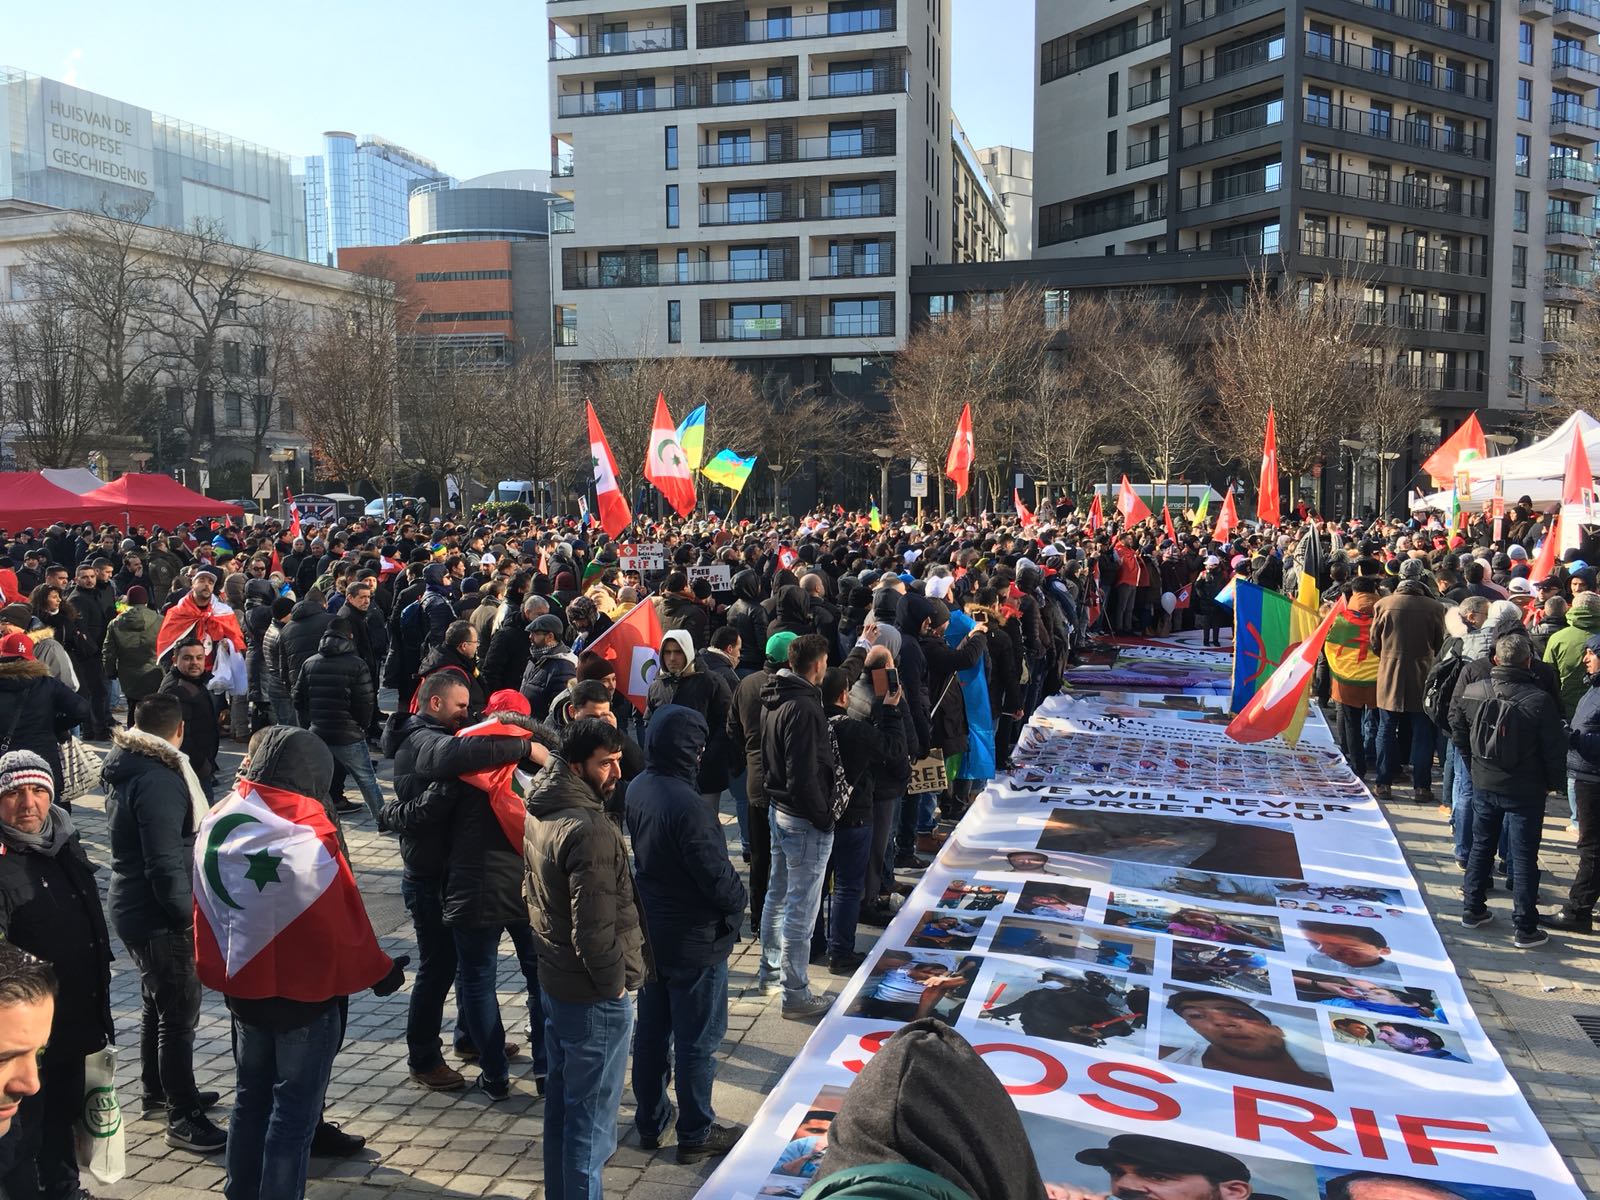 Drieduizend mensen protesteren voor Riffijnse zaak in Brussel